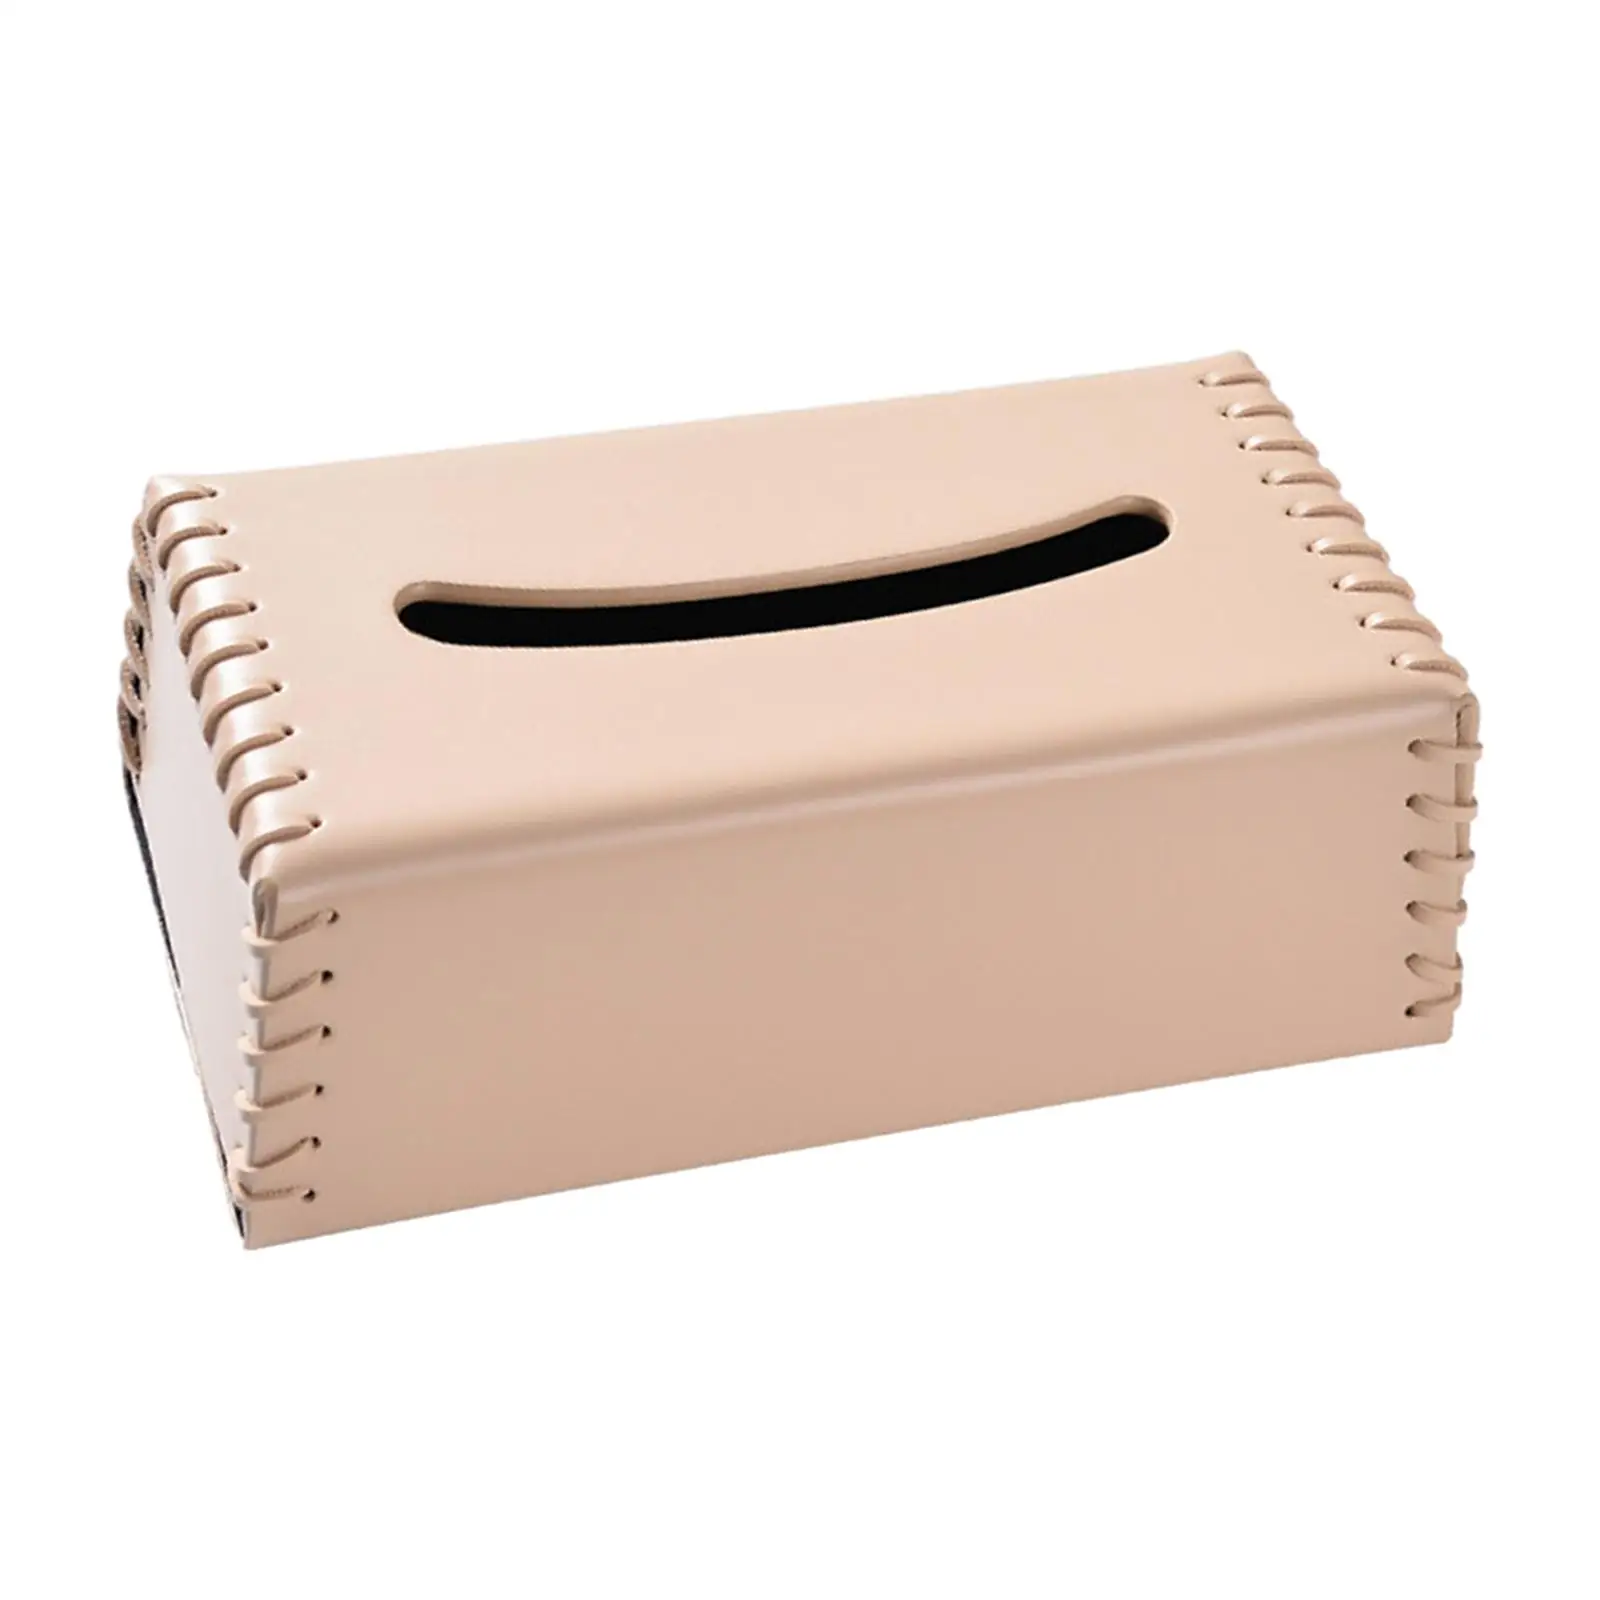 Tissue Box Holder Tissue Case Facial Tissue Dispenser Box Tissue Dispenser Box for Living Room Office Home Bedroom Washroom